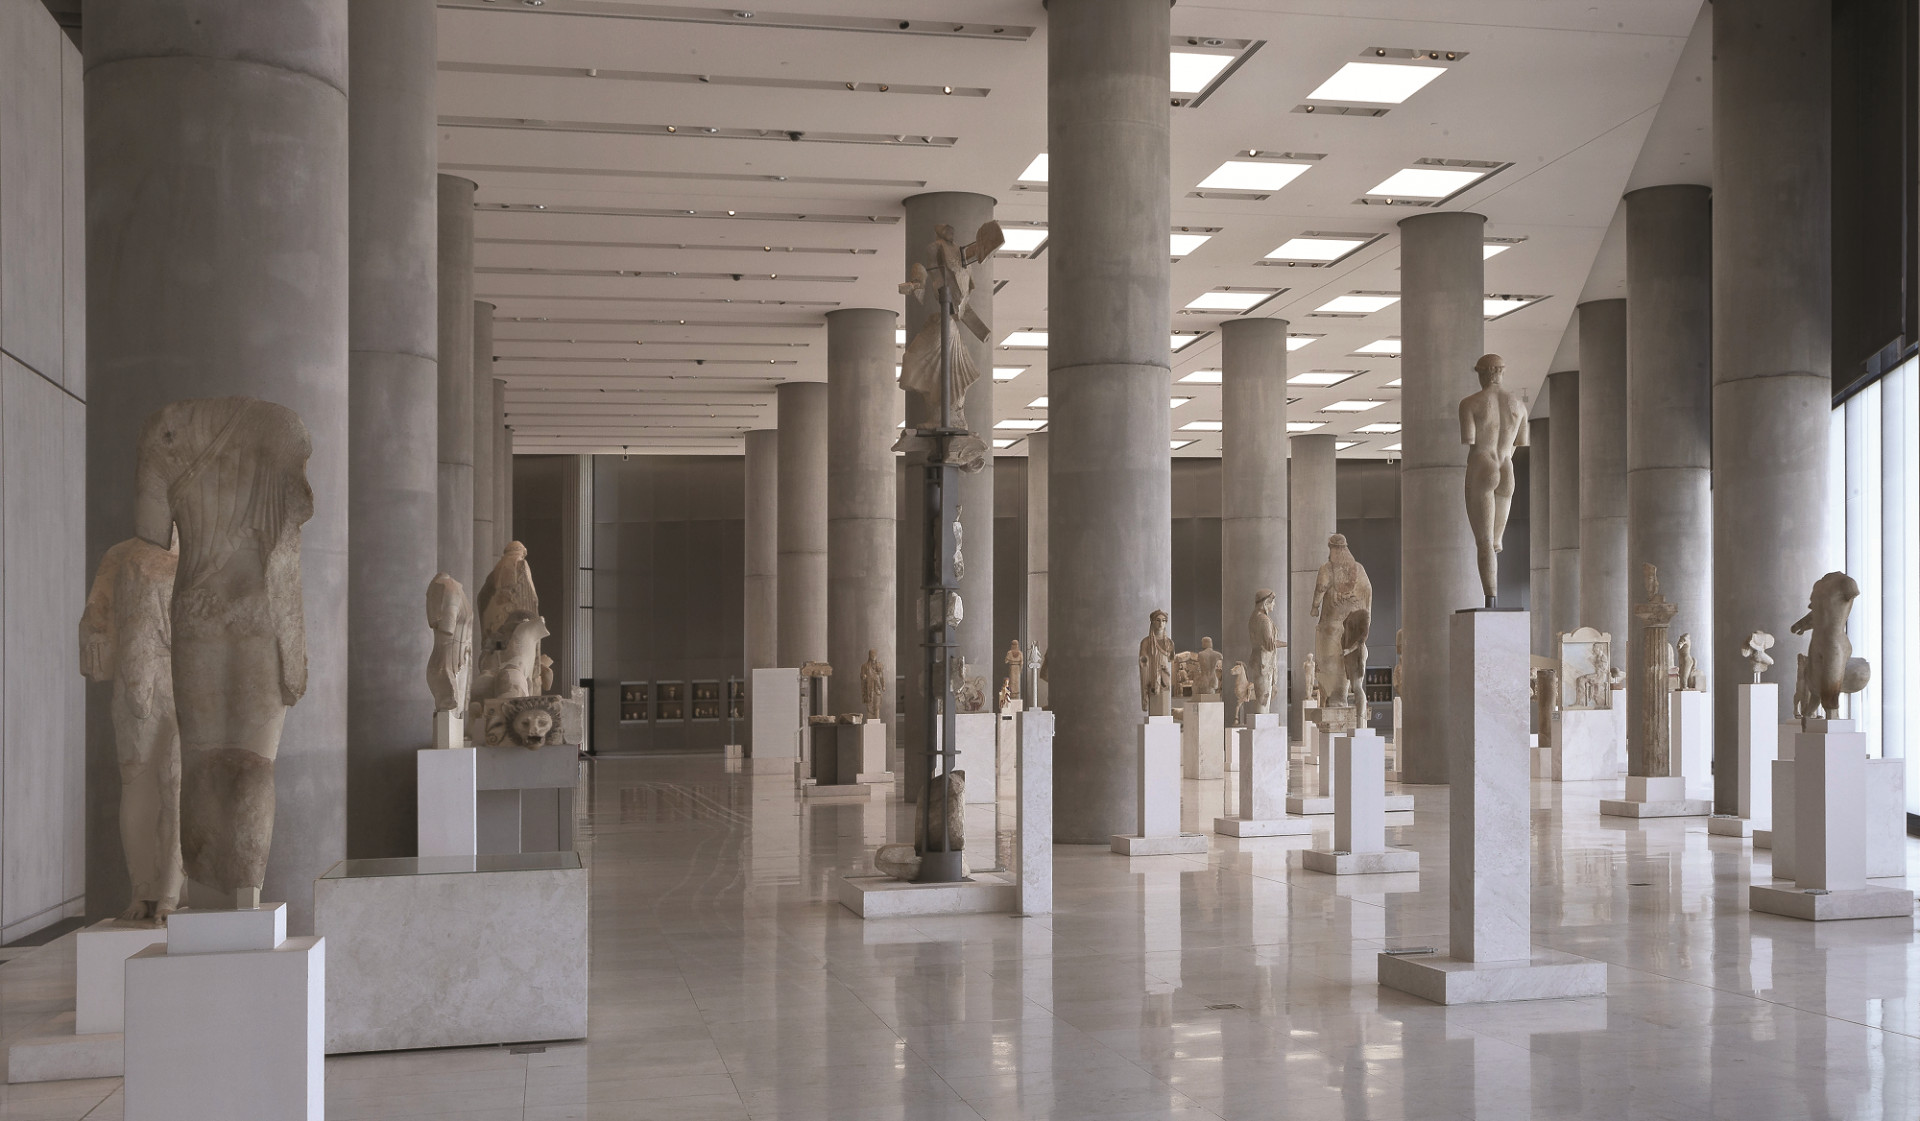 Εκδηλώσεις Μουσείου Ακρόπολης: Δύο ημέρες αφιερωμένες στα Μουσεία